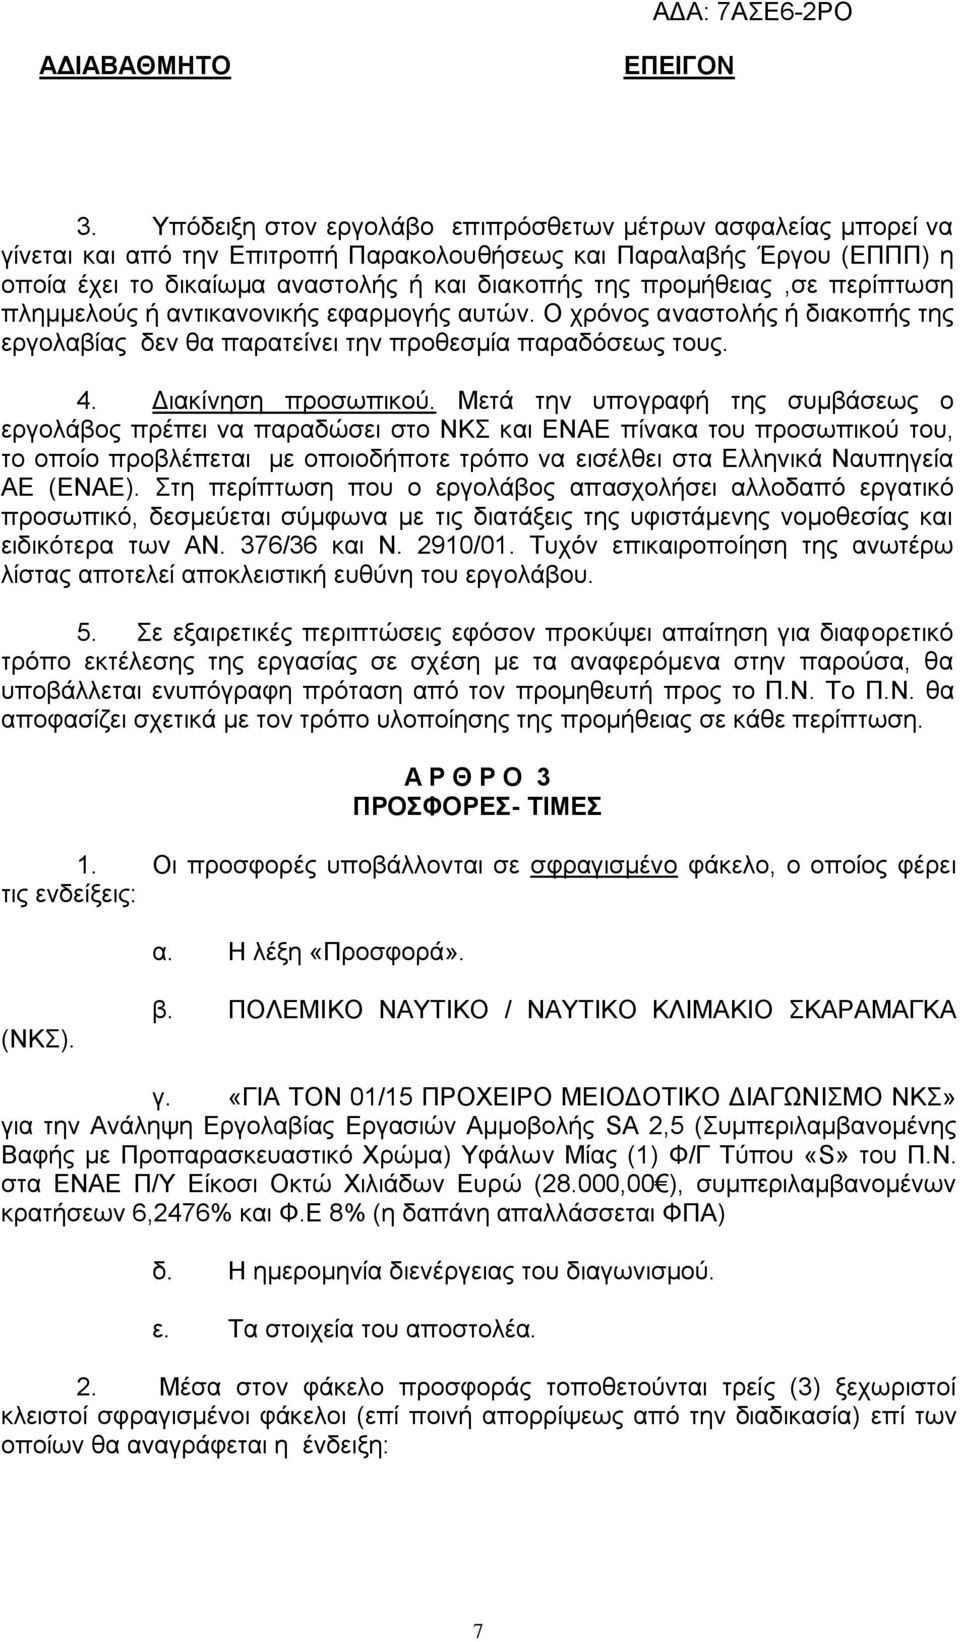 Μετά την υπογραφή της συμβάσεως ο εργολάβος πρέπει να παραδώσει στο ΝΚΣ και ΕΝΑΕ πίνακα του προσωπικού του, το οποίο προβλέπεται με οποιοδήποτε τρόπο να εισέλθει στα Ελληνικά Ναυπηγεία ΑΕ (ΕΝΑΕ).